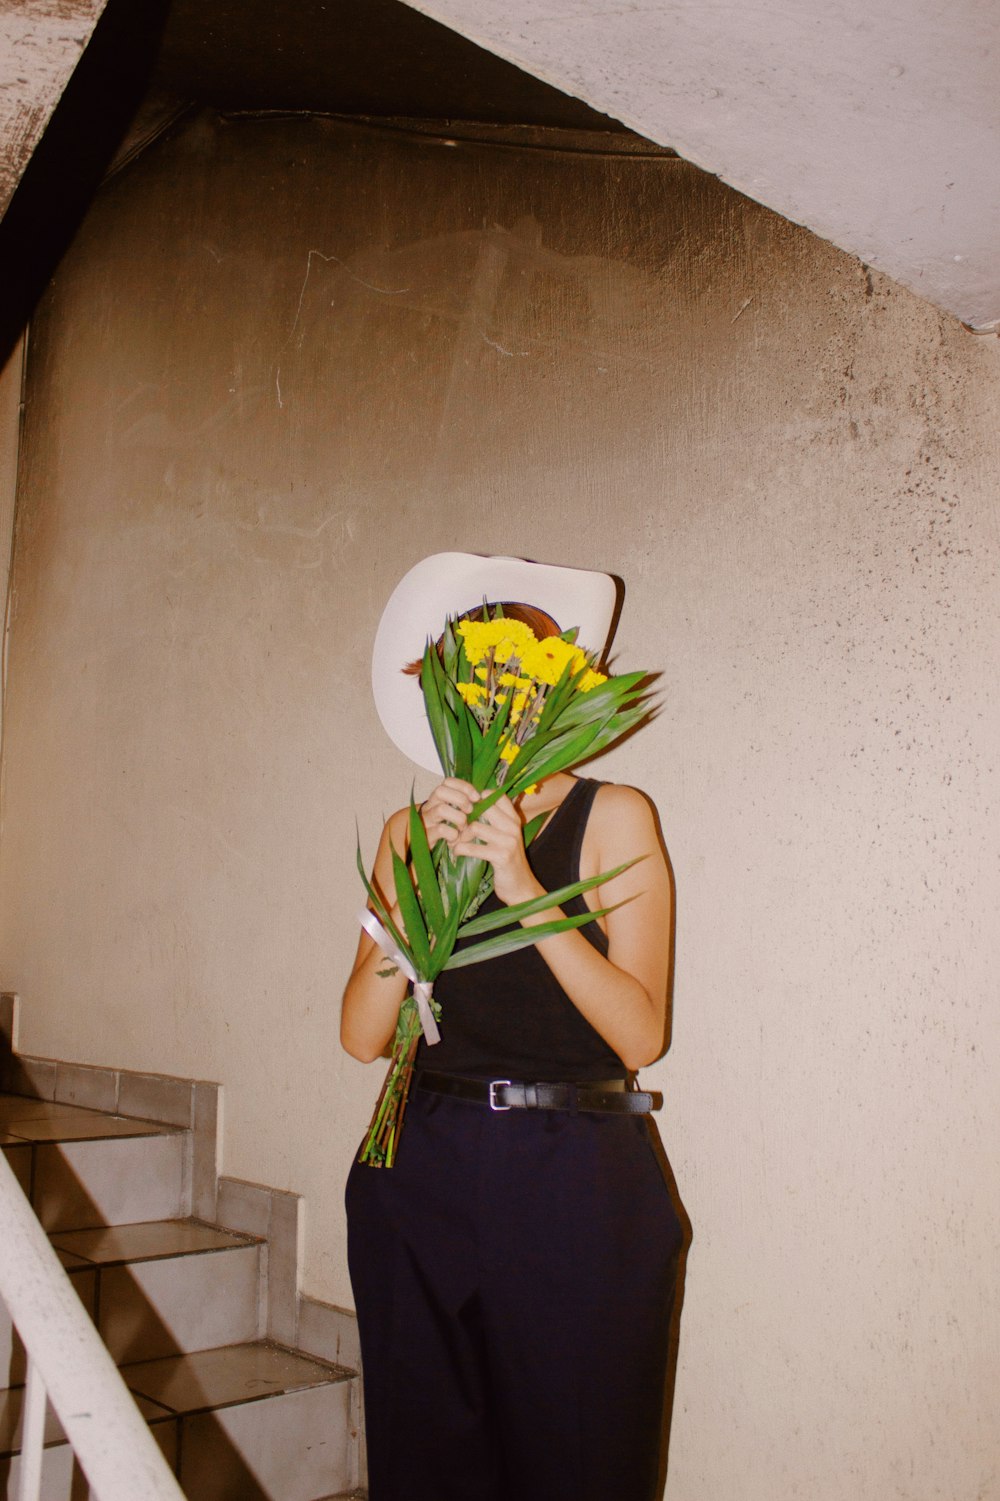 그녀의 얼굴 앞에 꽃 다발을 들고 있는 여자